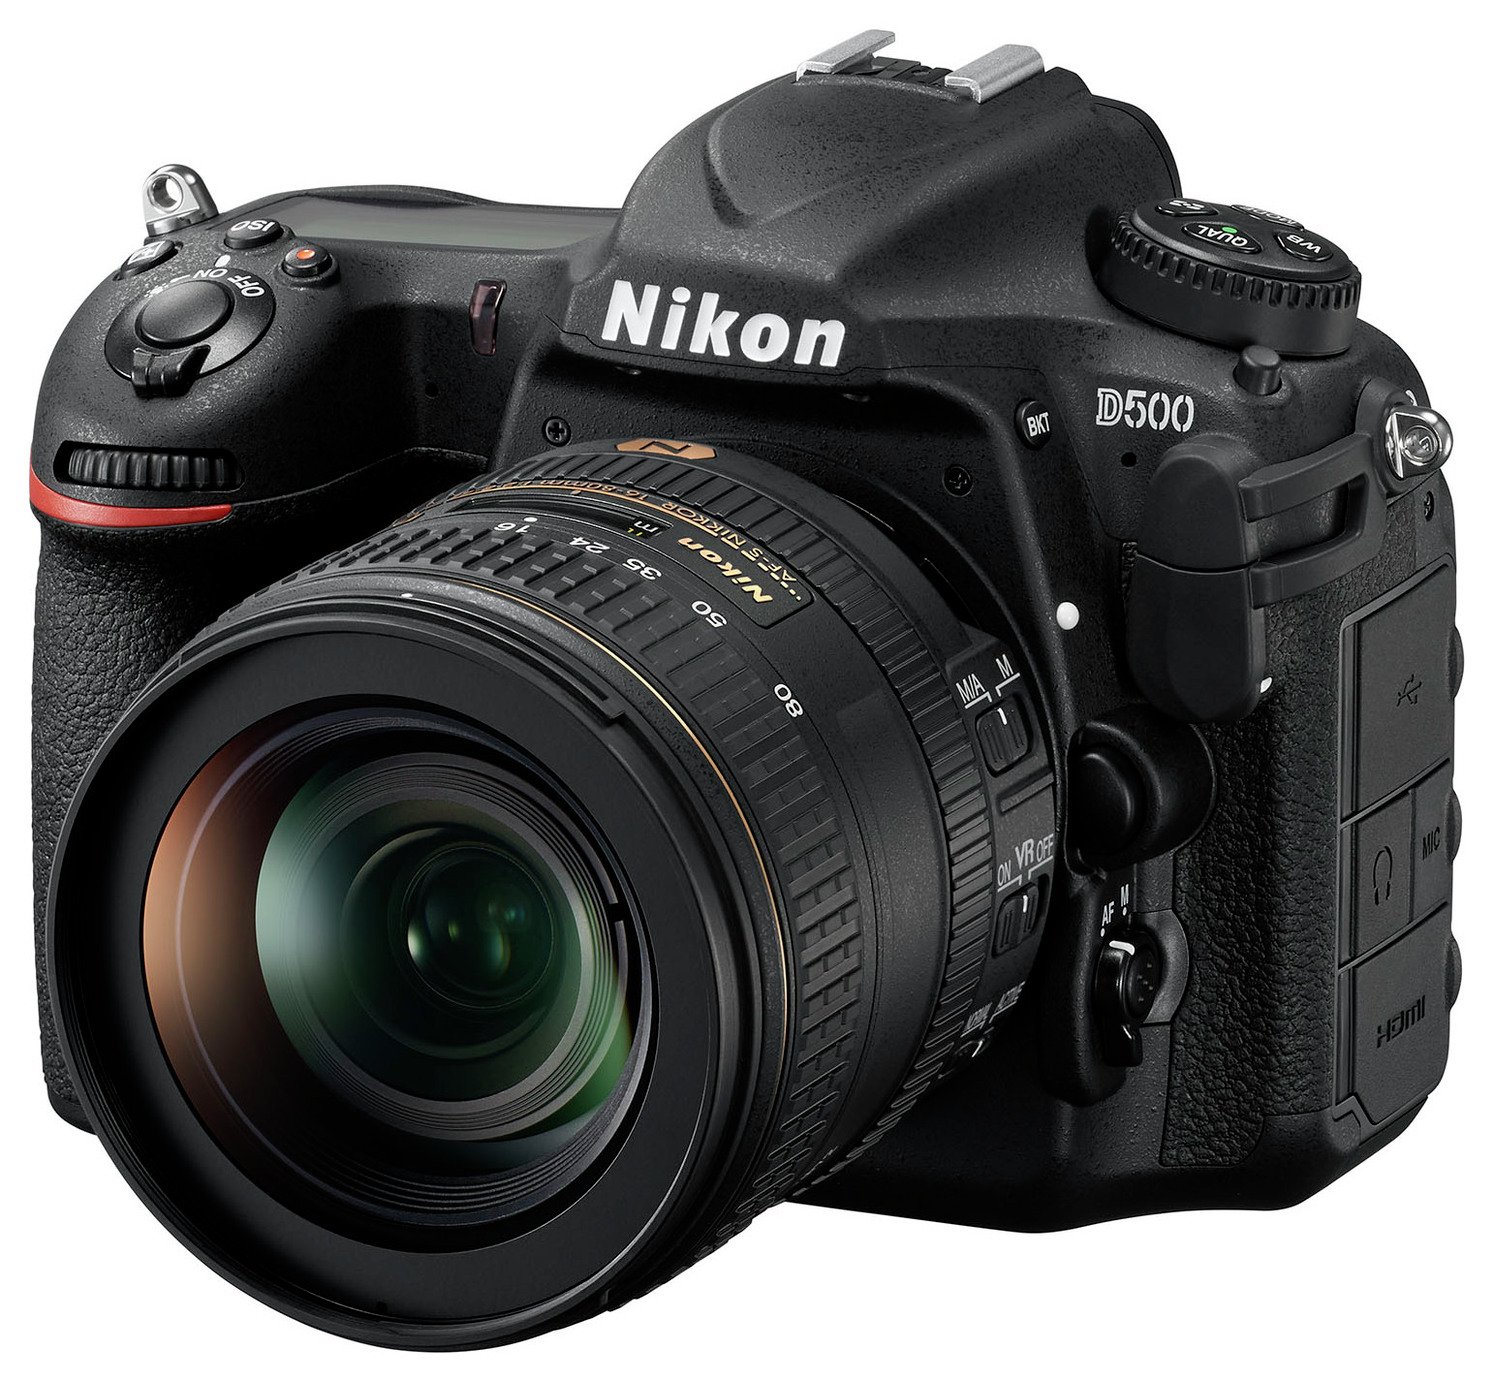 Nikon D500 DSLR Camera and AF-S DX 16-80mm VR Lens Review